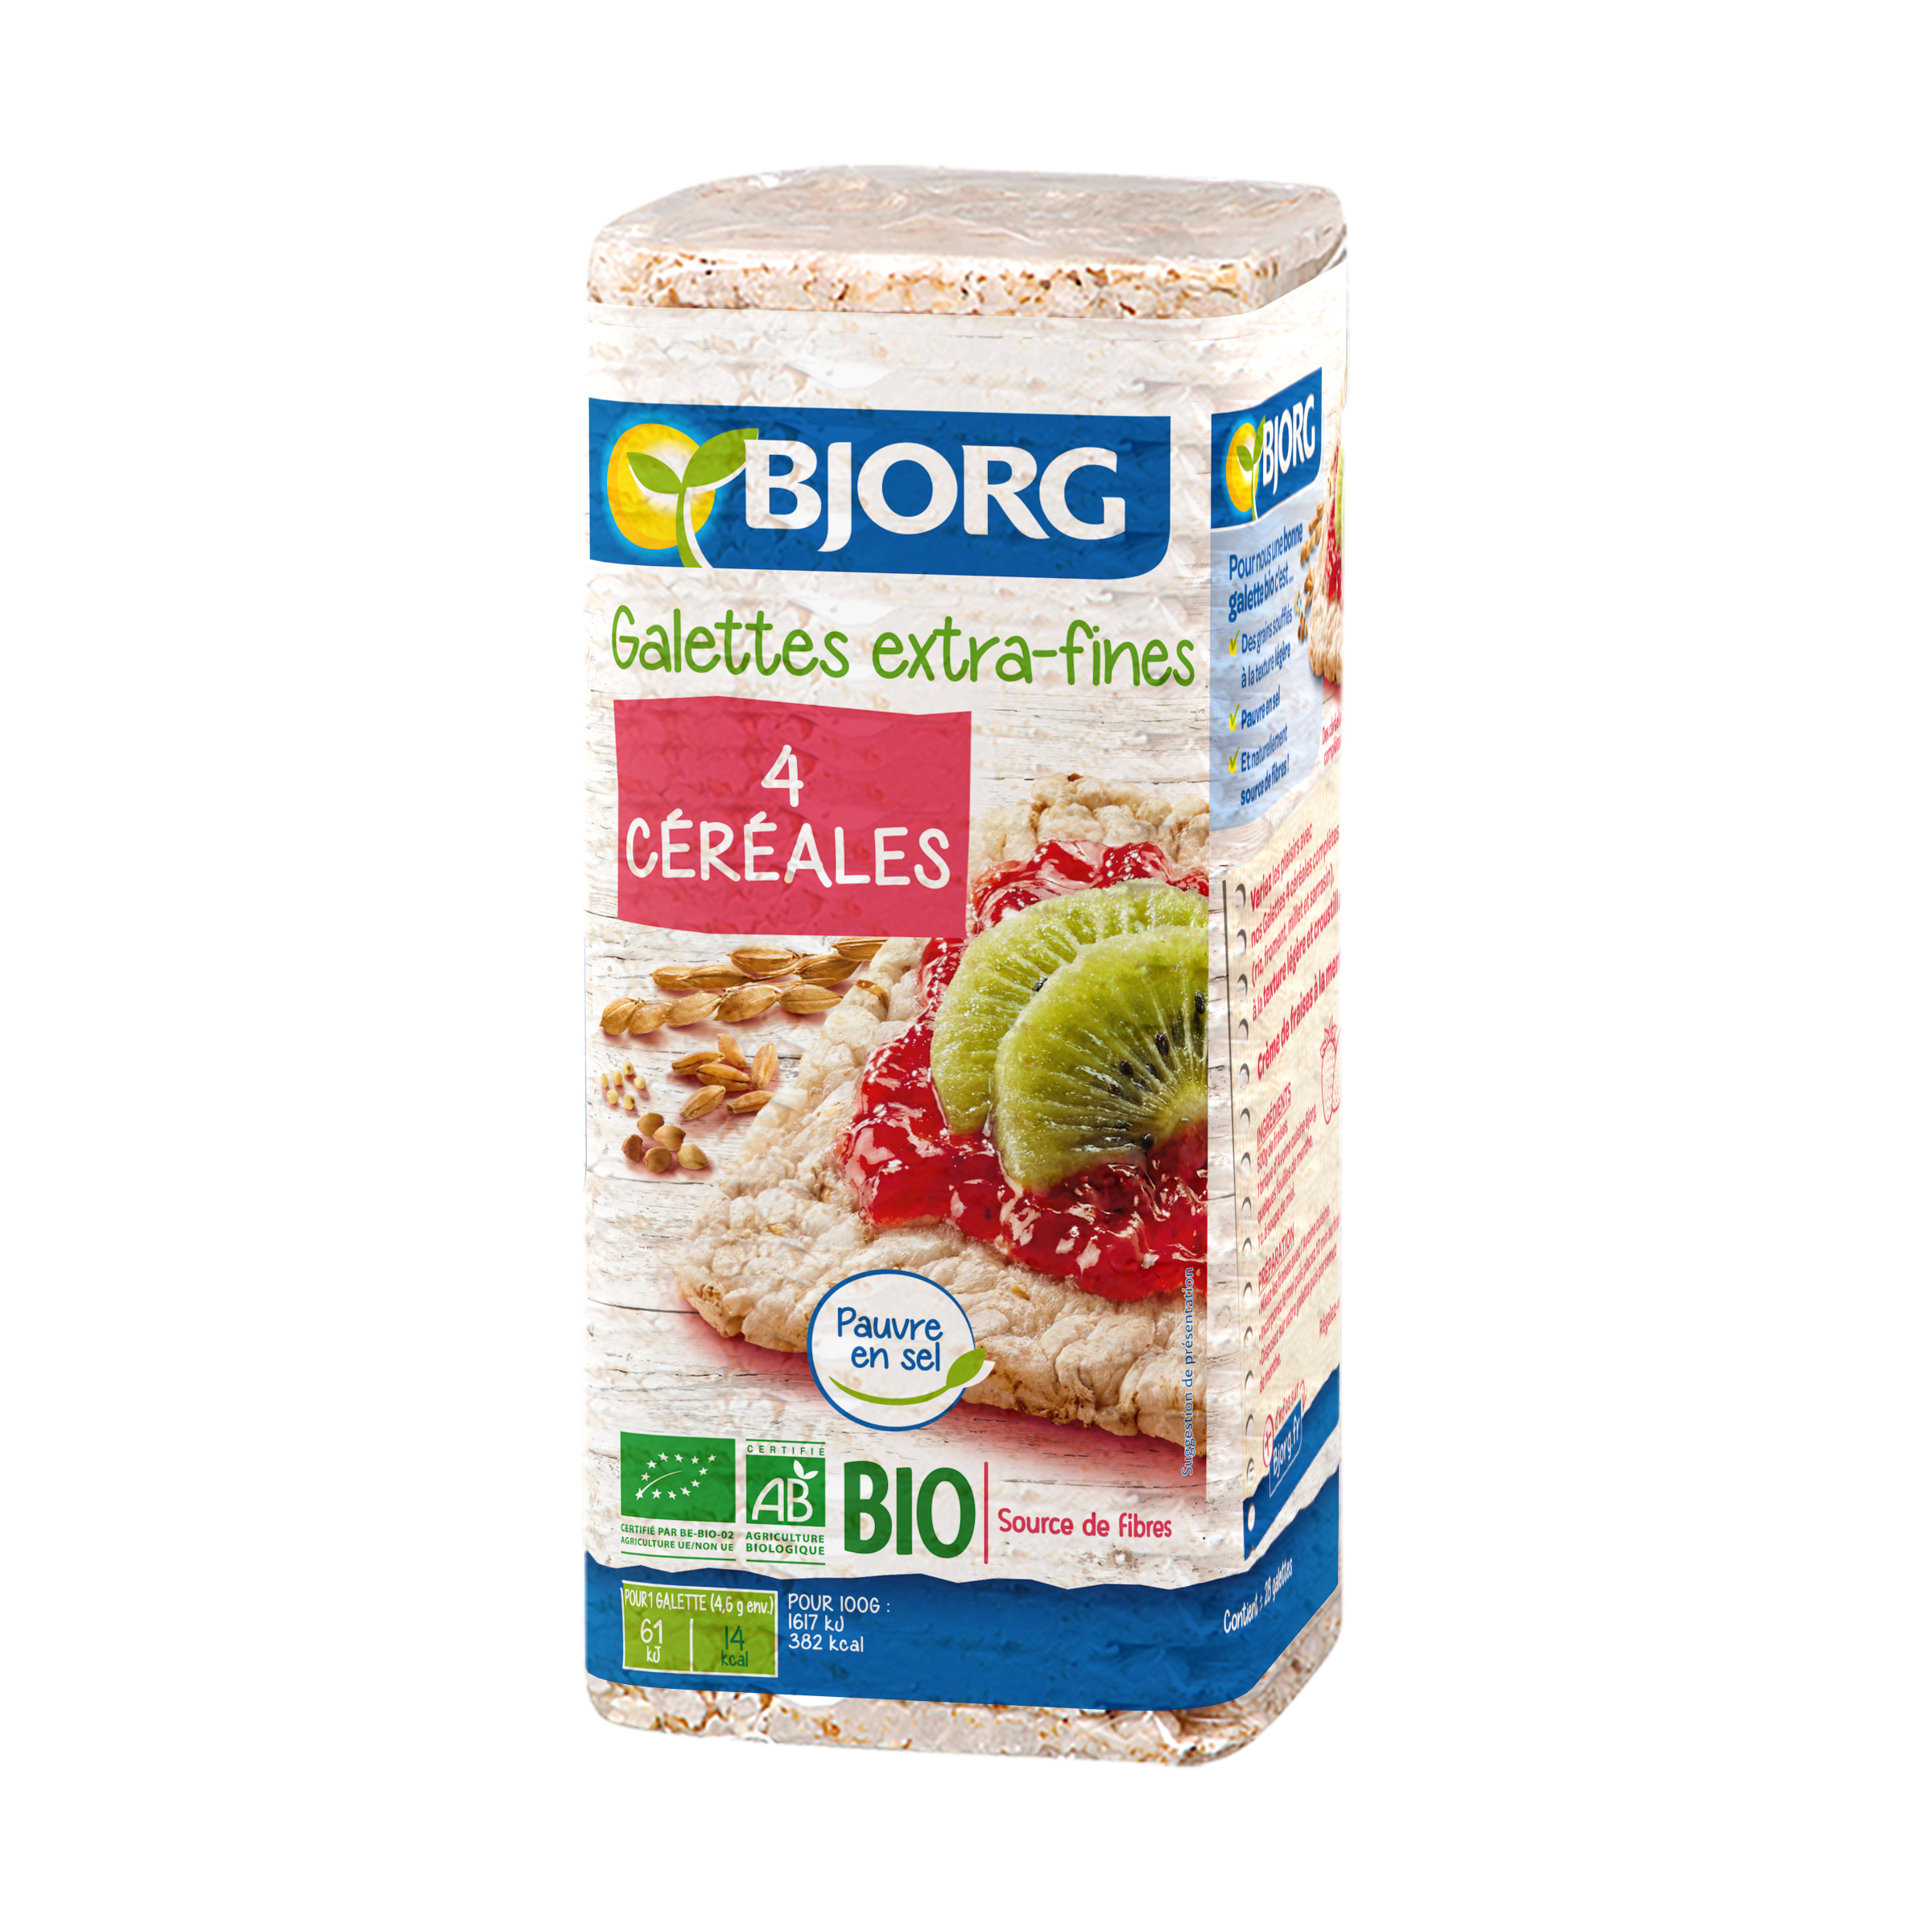 Bjorg Rice Crackers Extra Thin Bio 130g